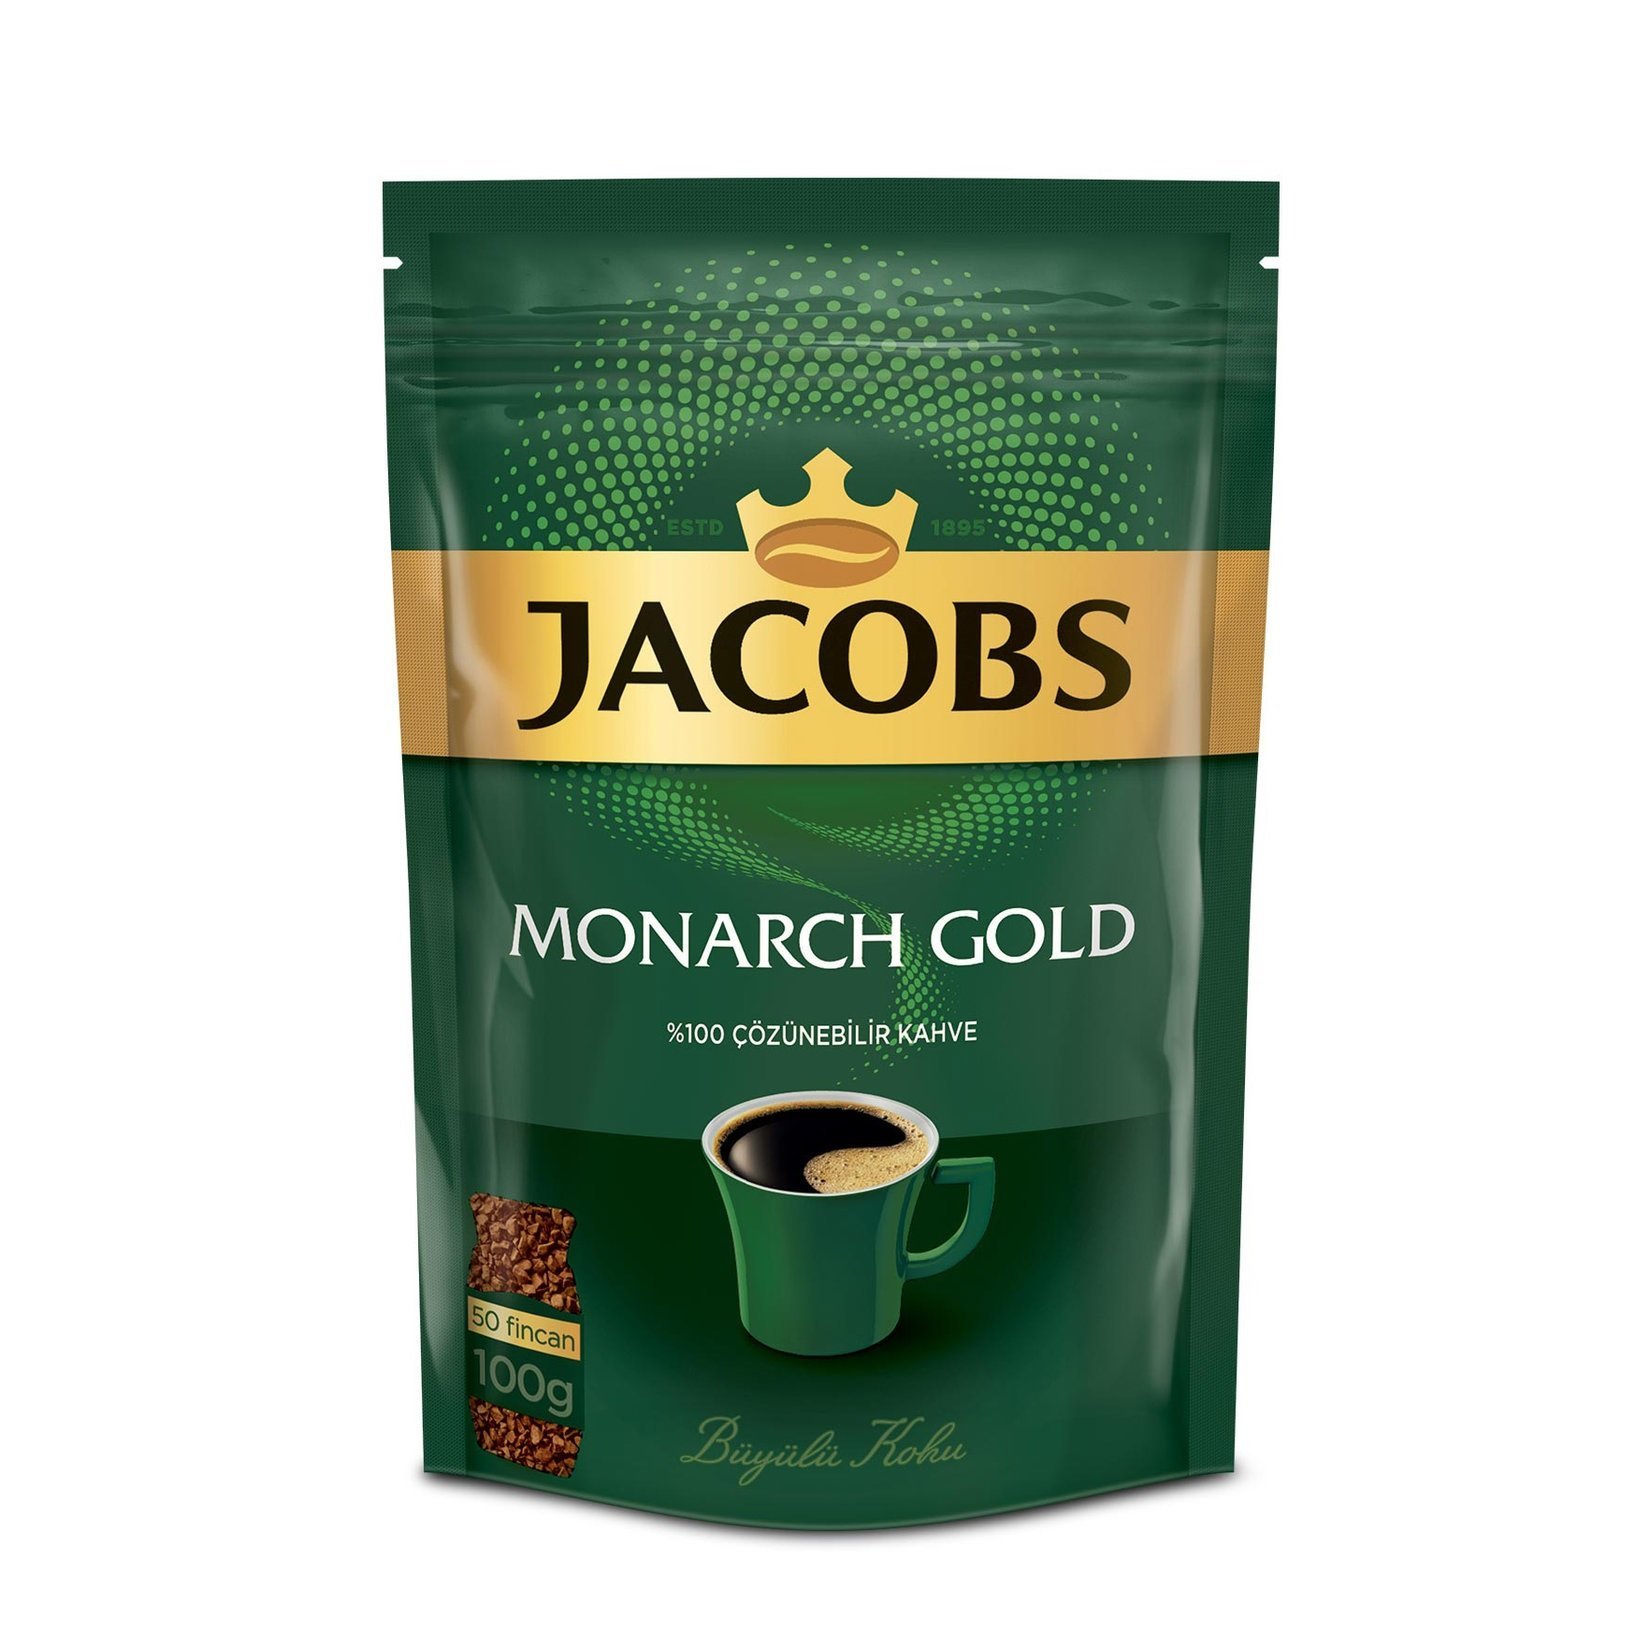 Jacobs Monarch Gold Eko Paket 100 gr. Çözünebilir Kahve